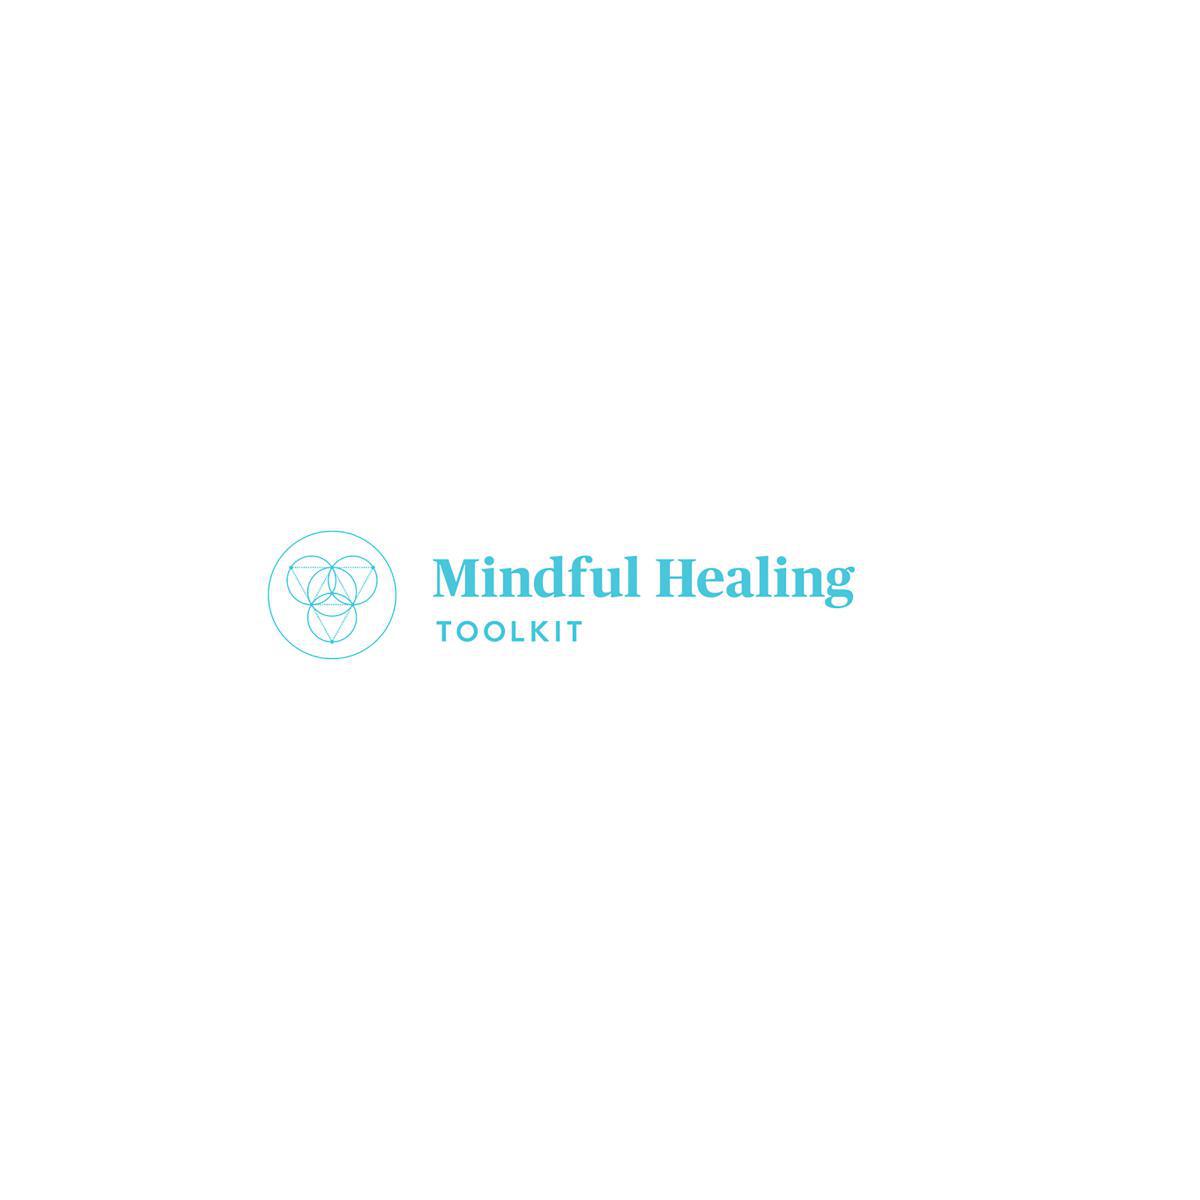 Mindful Healing Toolkit